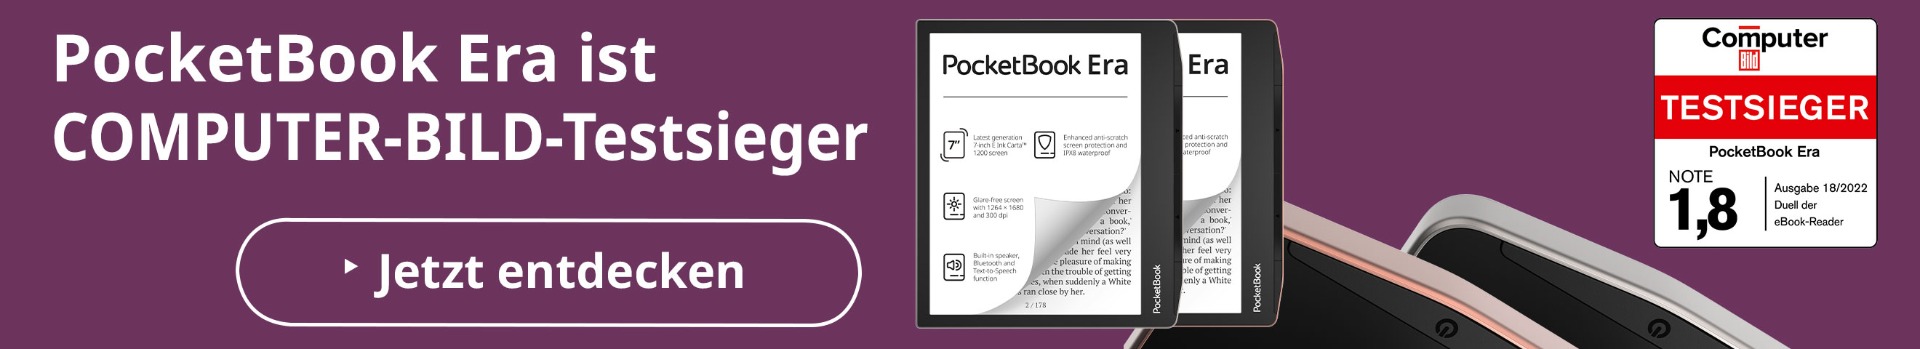 PocketBook Era Kombi-Angebot